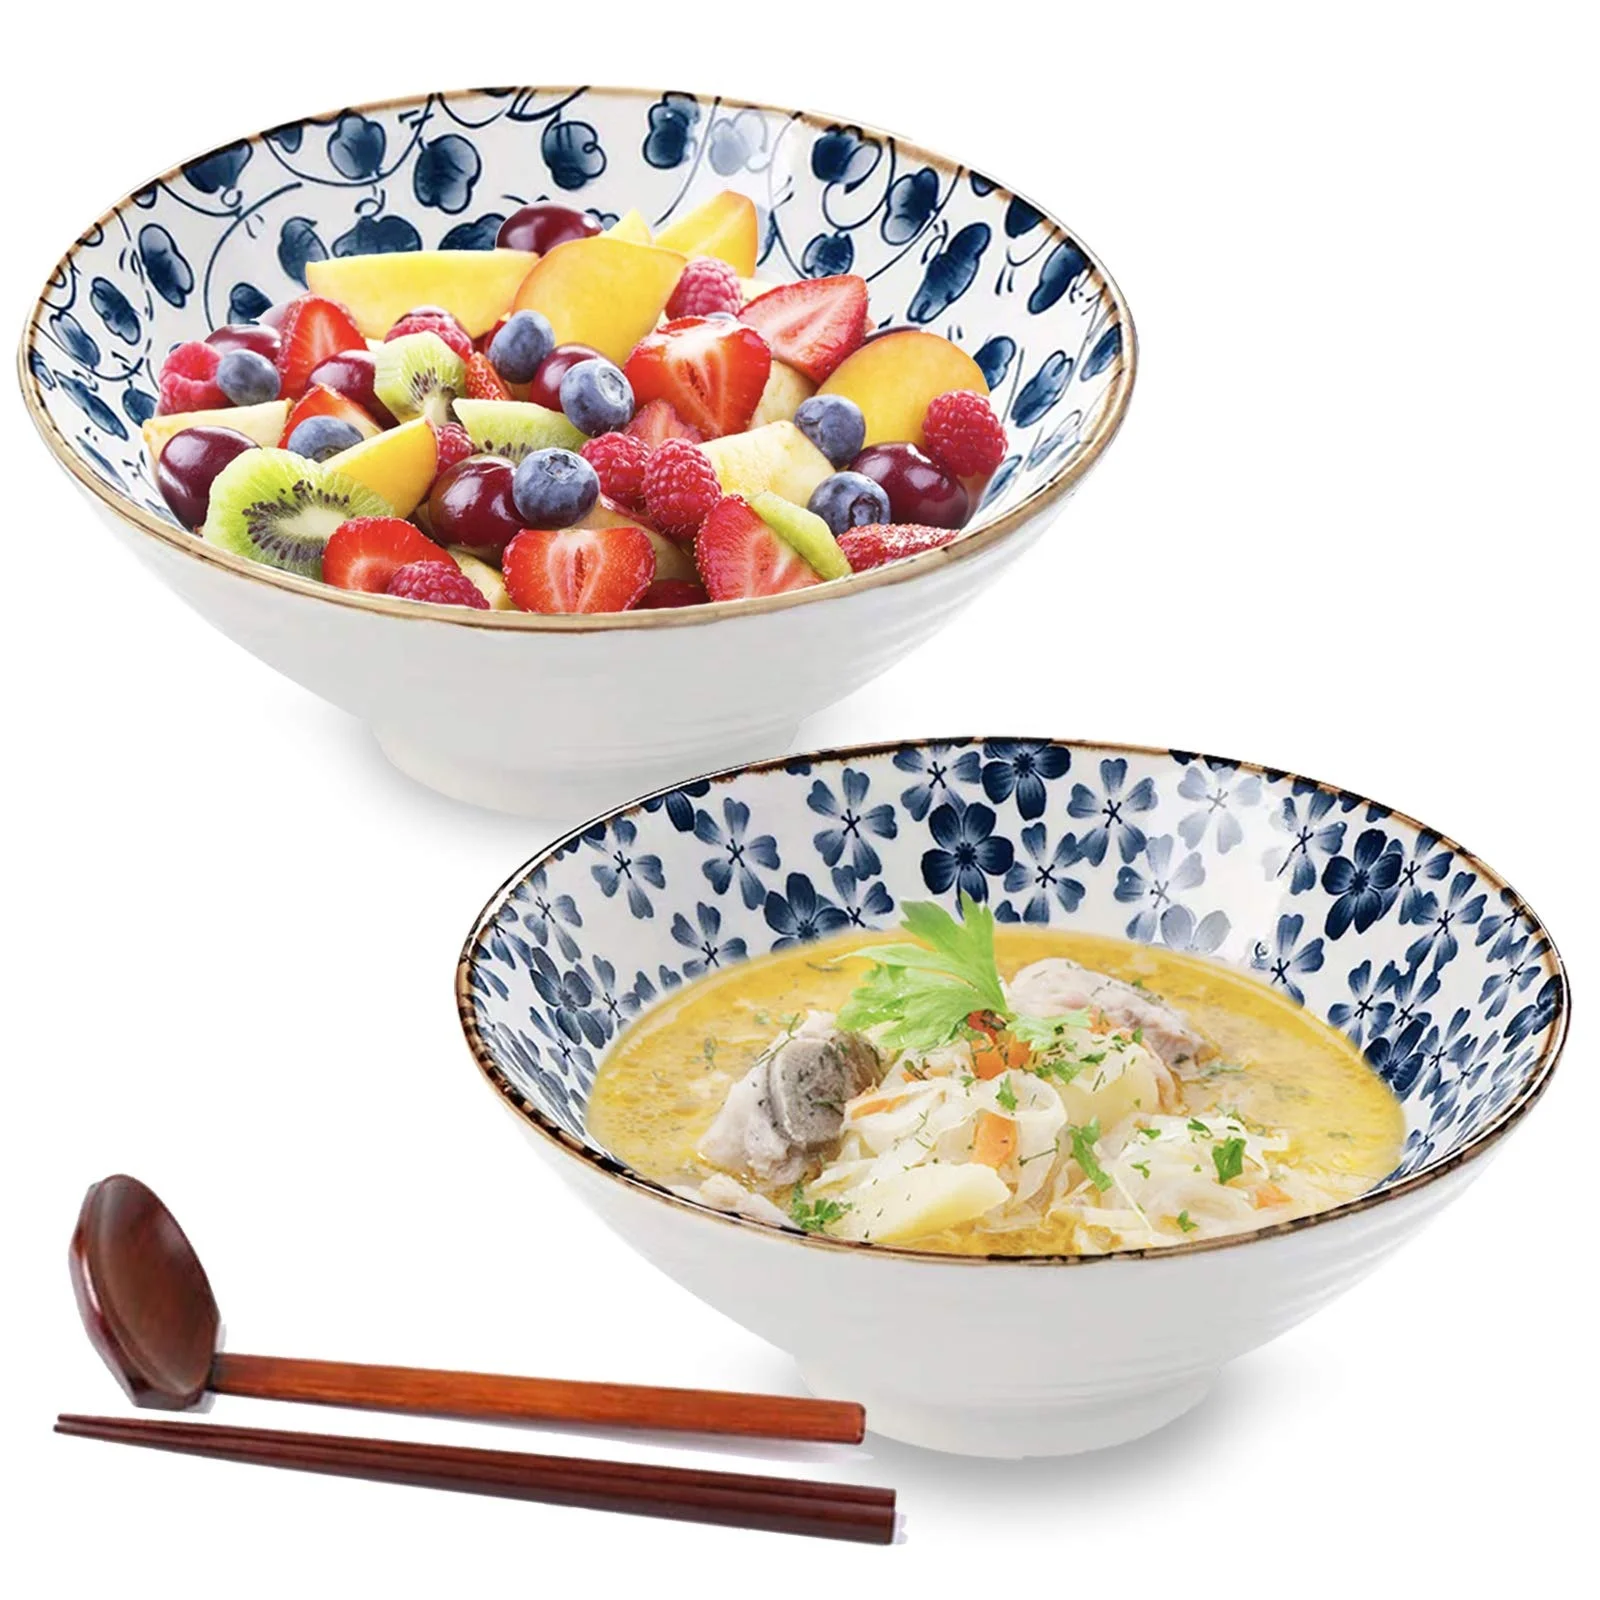 

Ceramic Japanese Ramen Noodle bowls Soup bowls for Salad Udon Soba Pho Asian Noodles